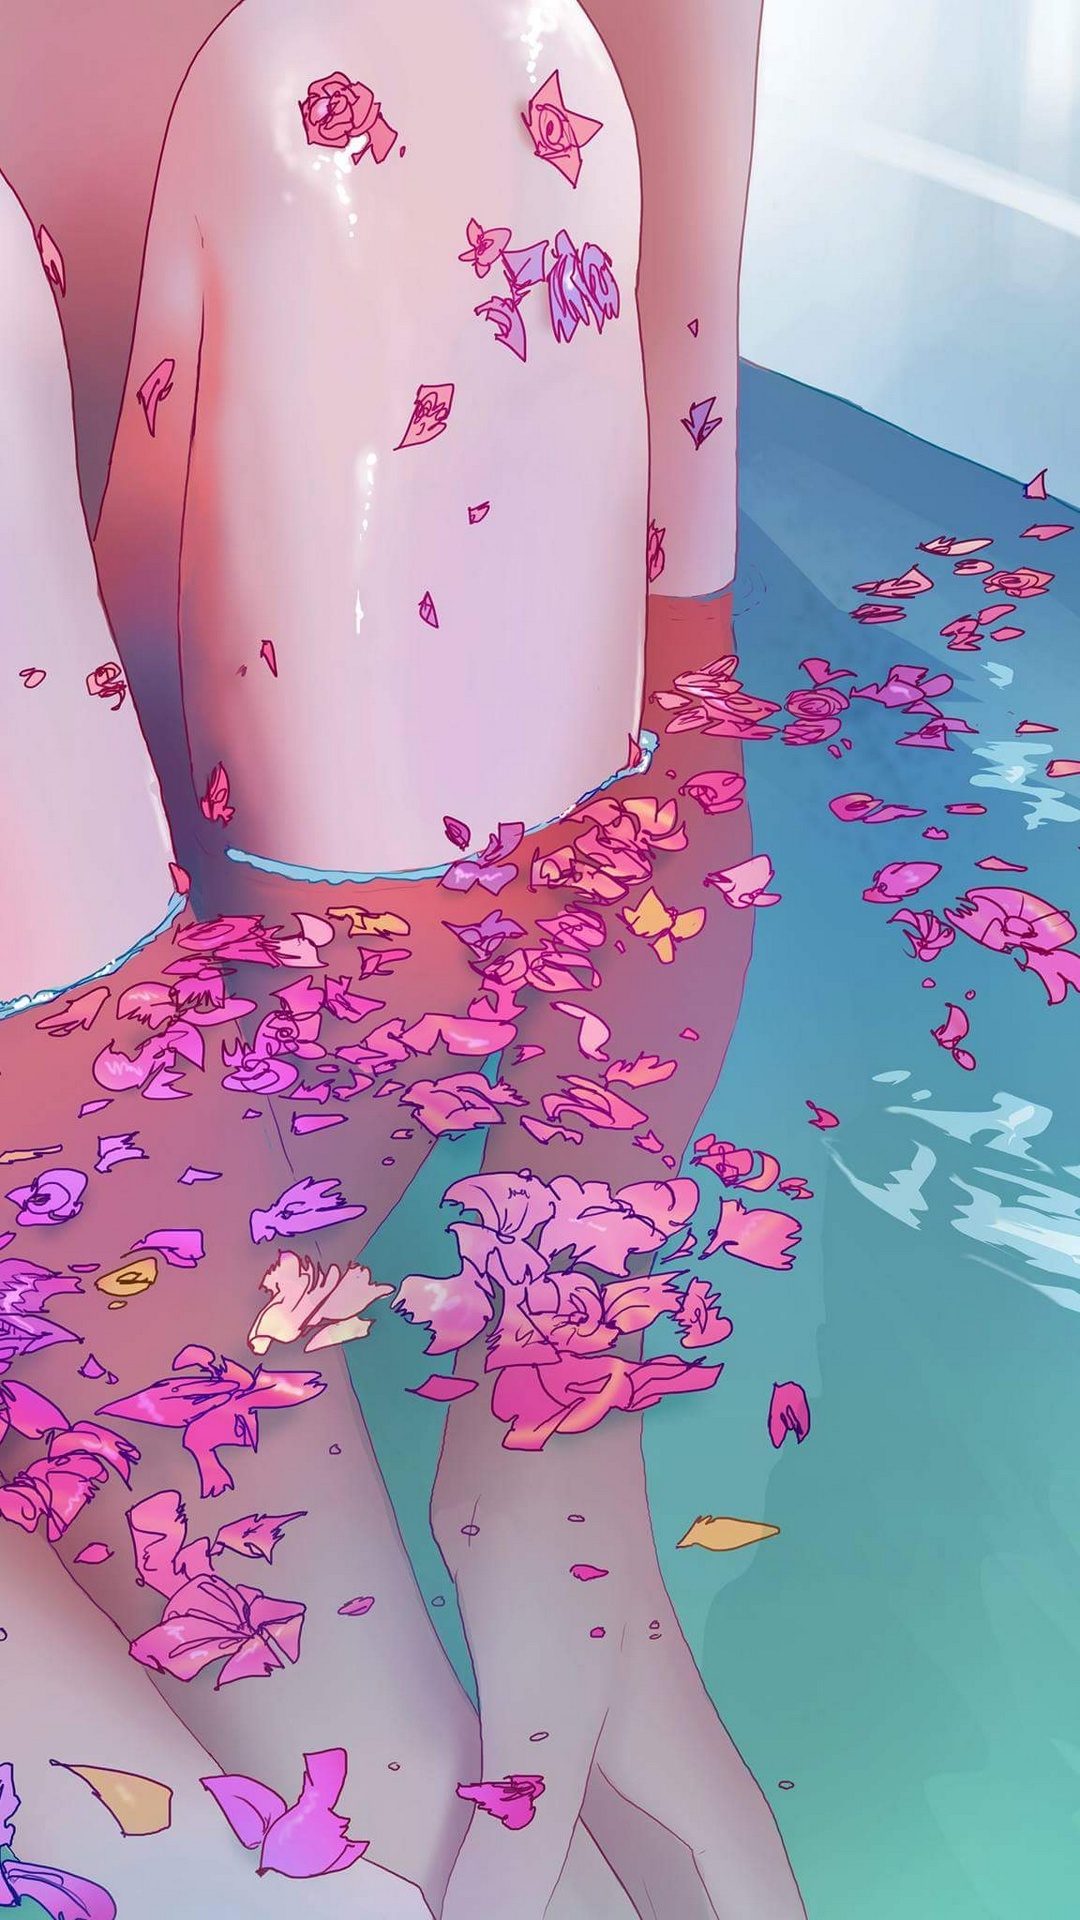 General 1080x1920 digital art flowers petals water legs in bathtub skinnyruitloop anime girls